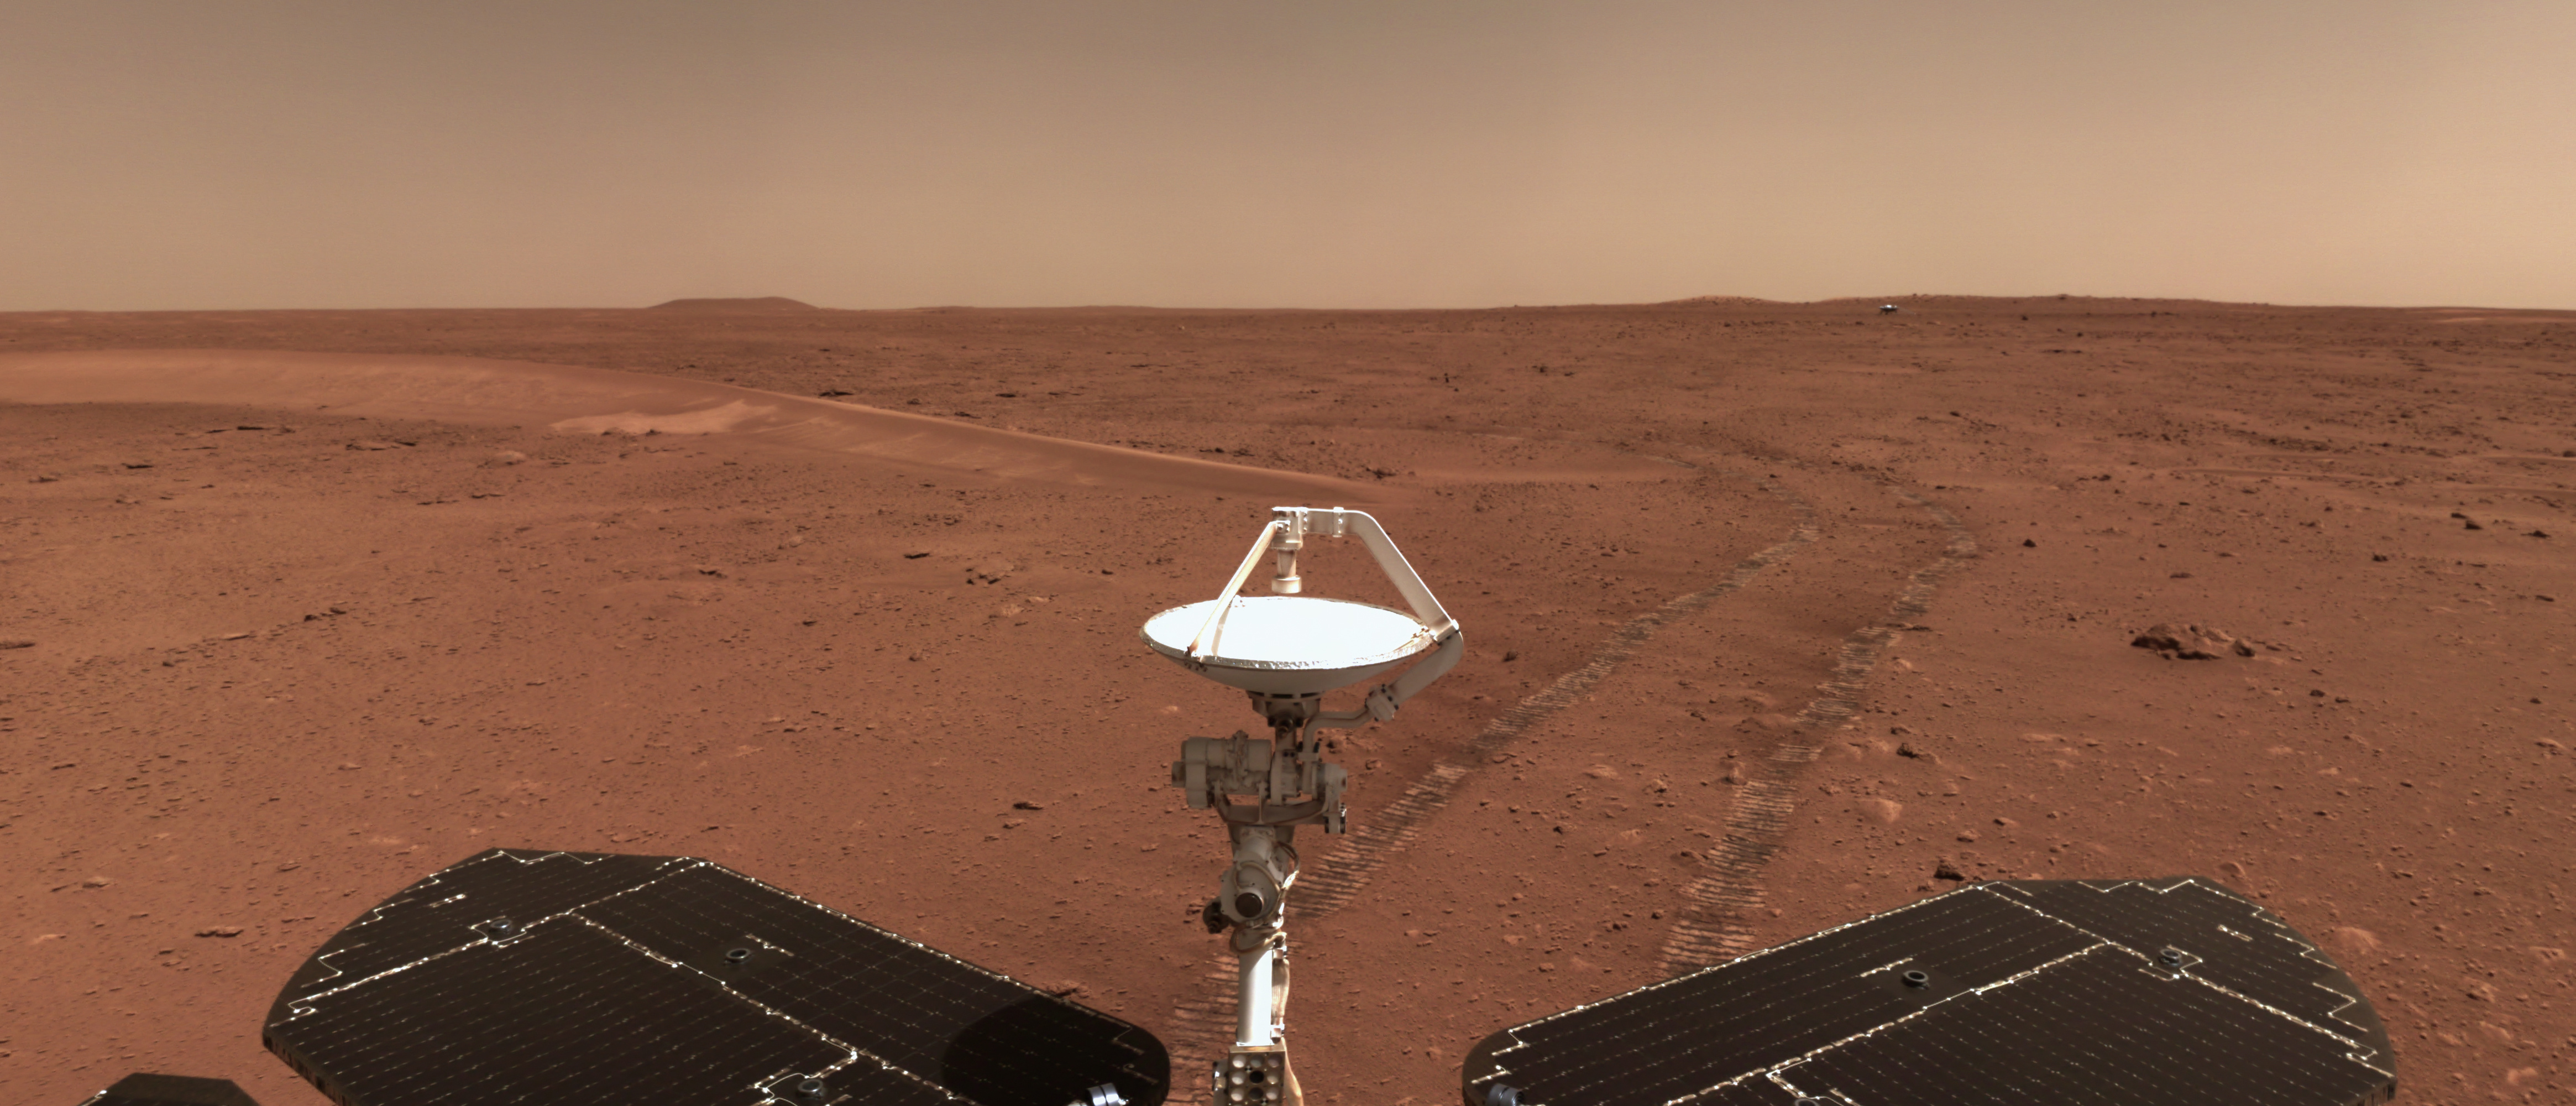 祝融号发现火星近期水活动迹象